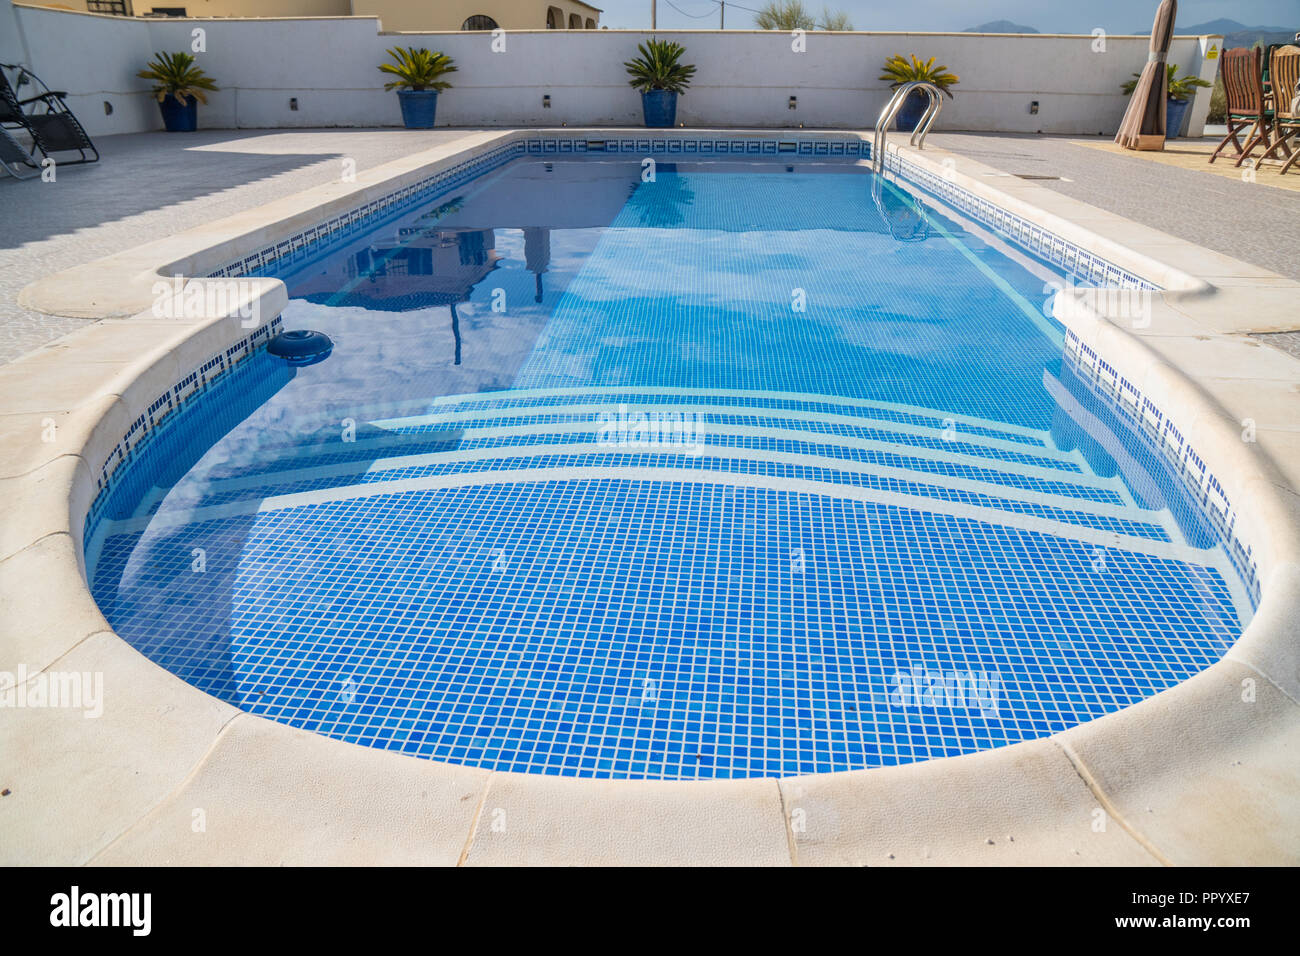 Schwimmbad in Spanien het gereinigt und retiled Stockfoto